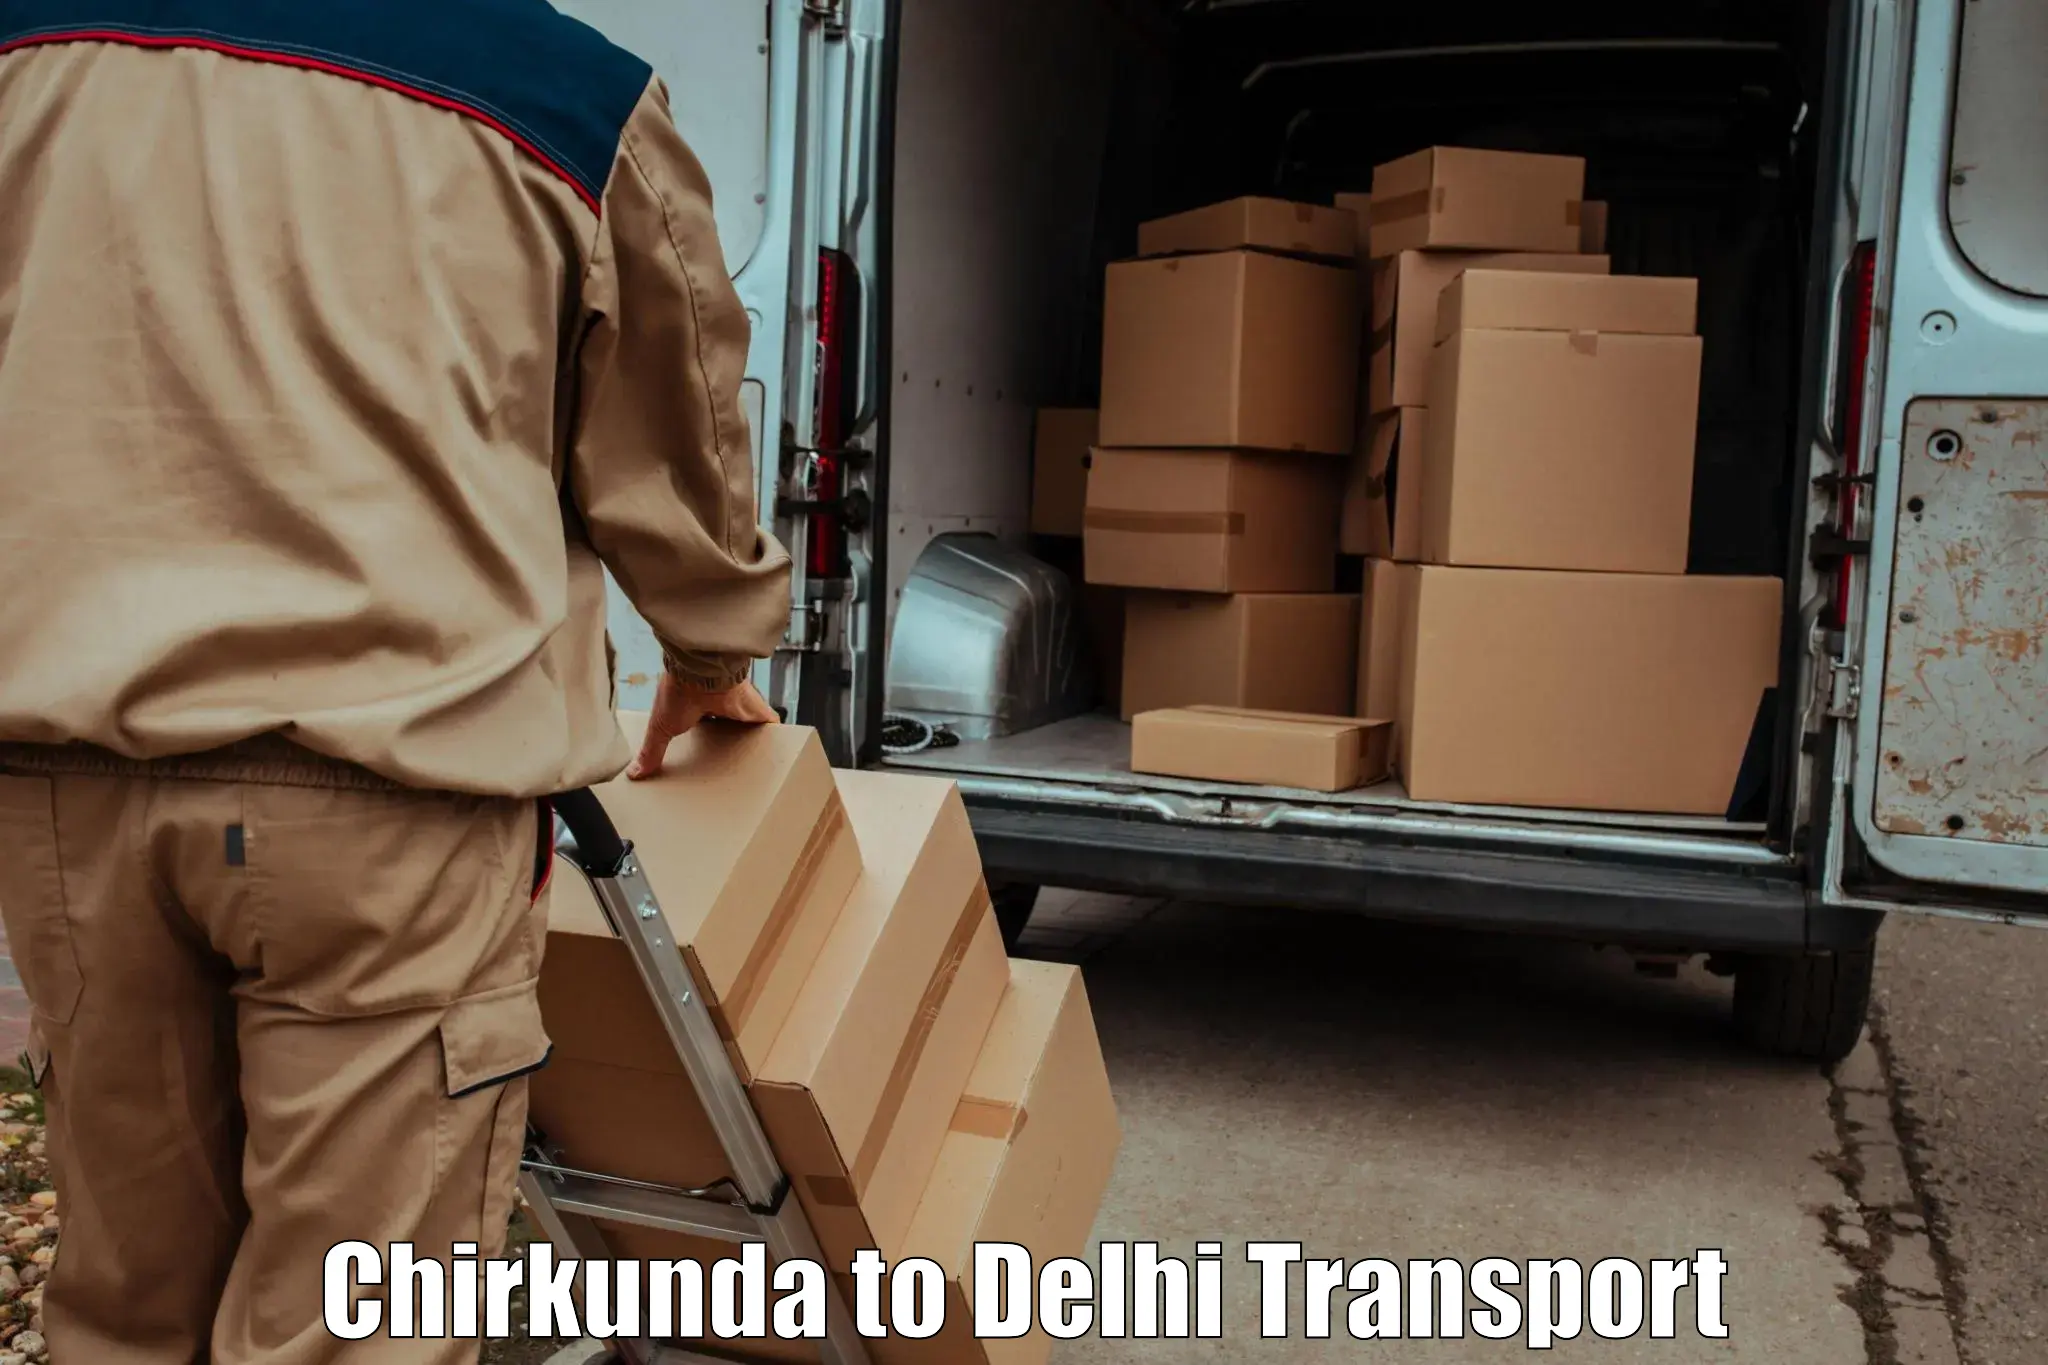 Daily transport service Chirkunda to Jamia Millia Islamia New Delhi